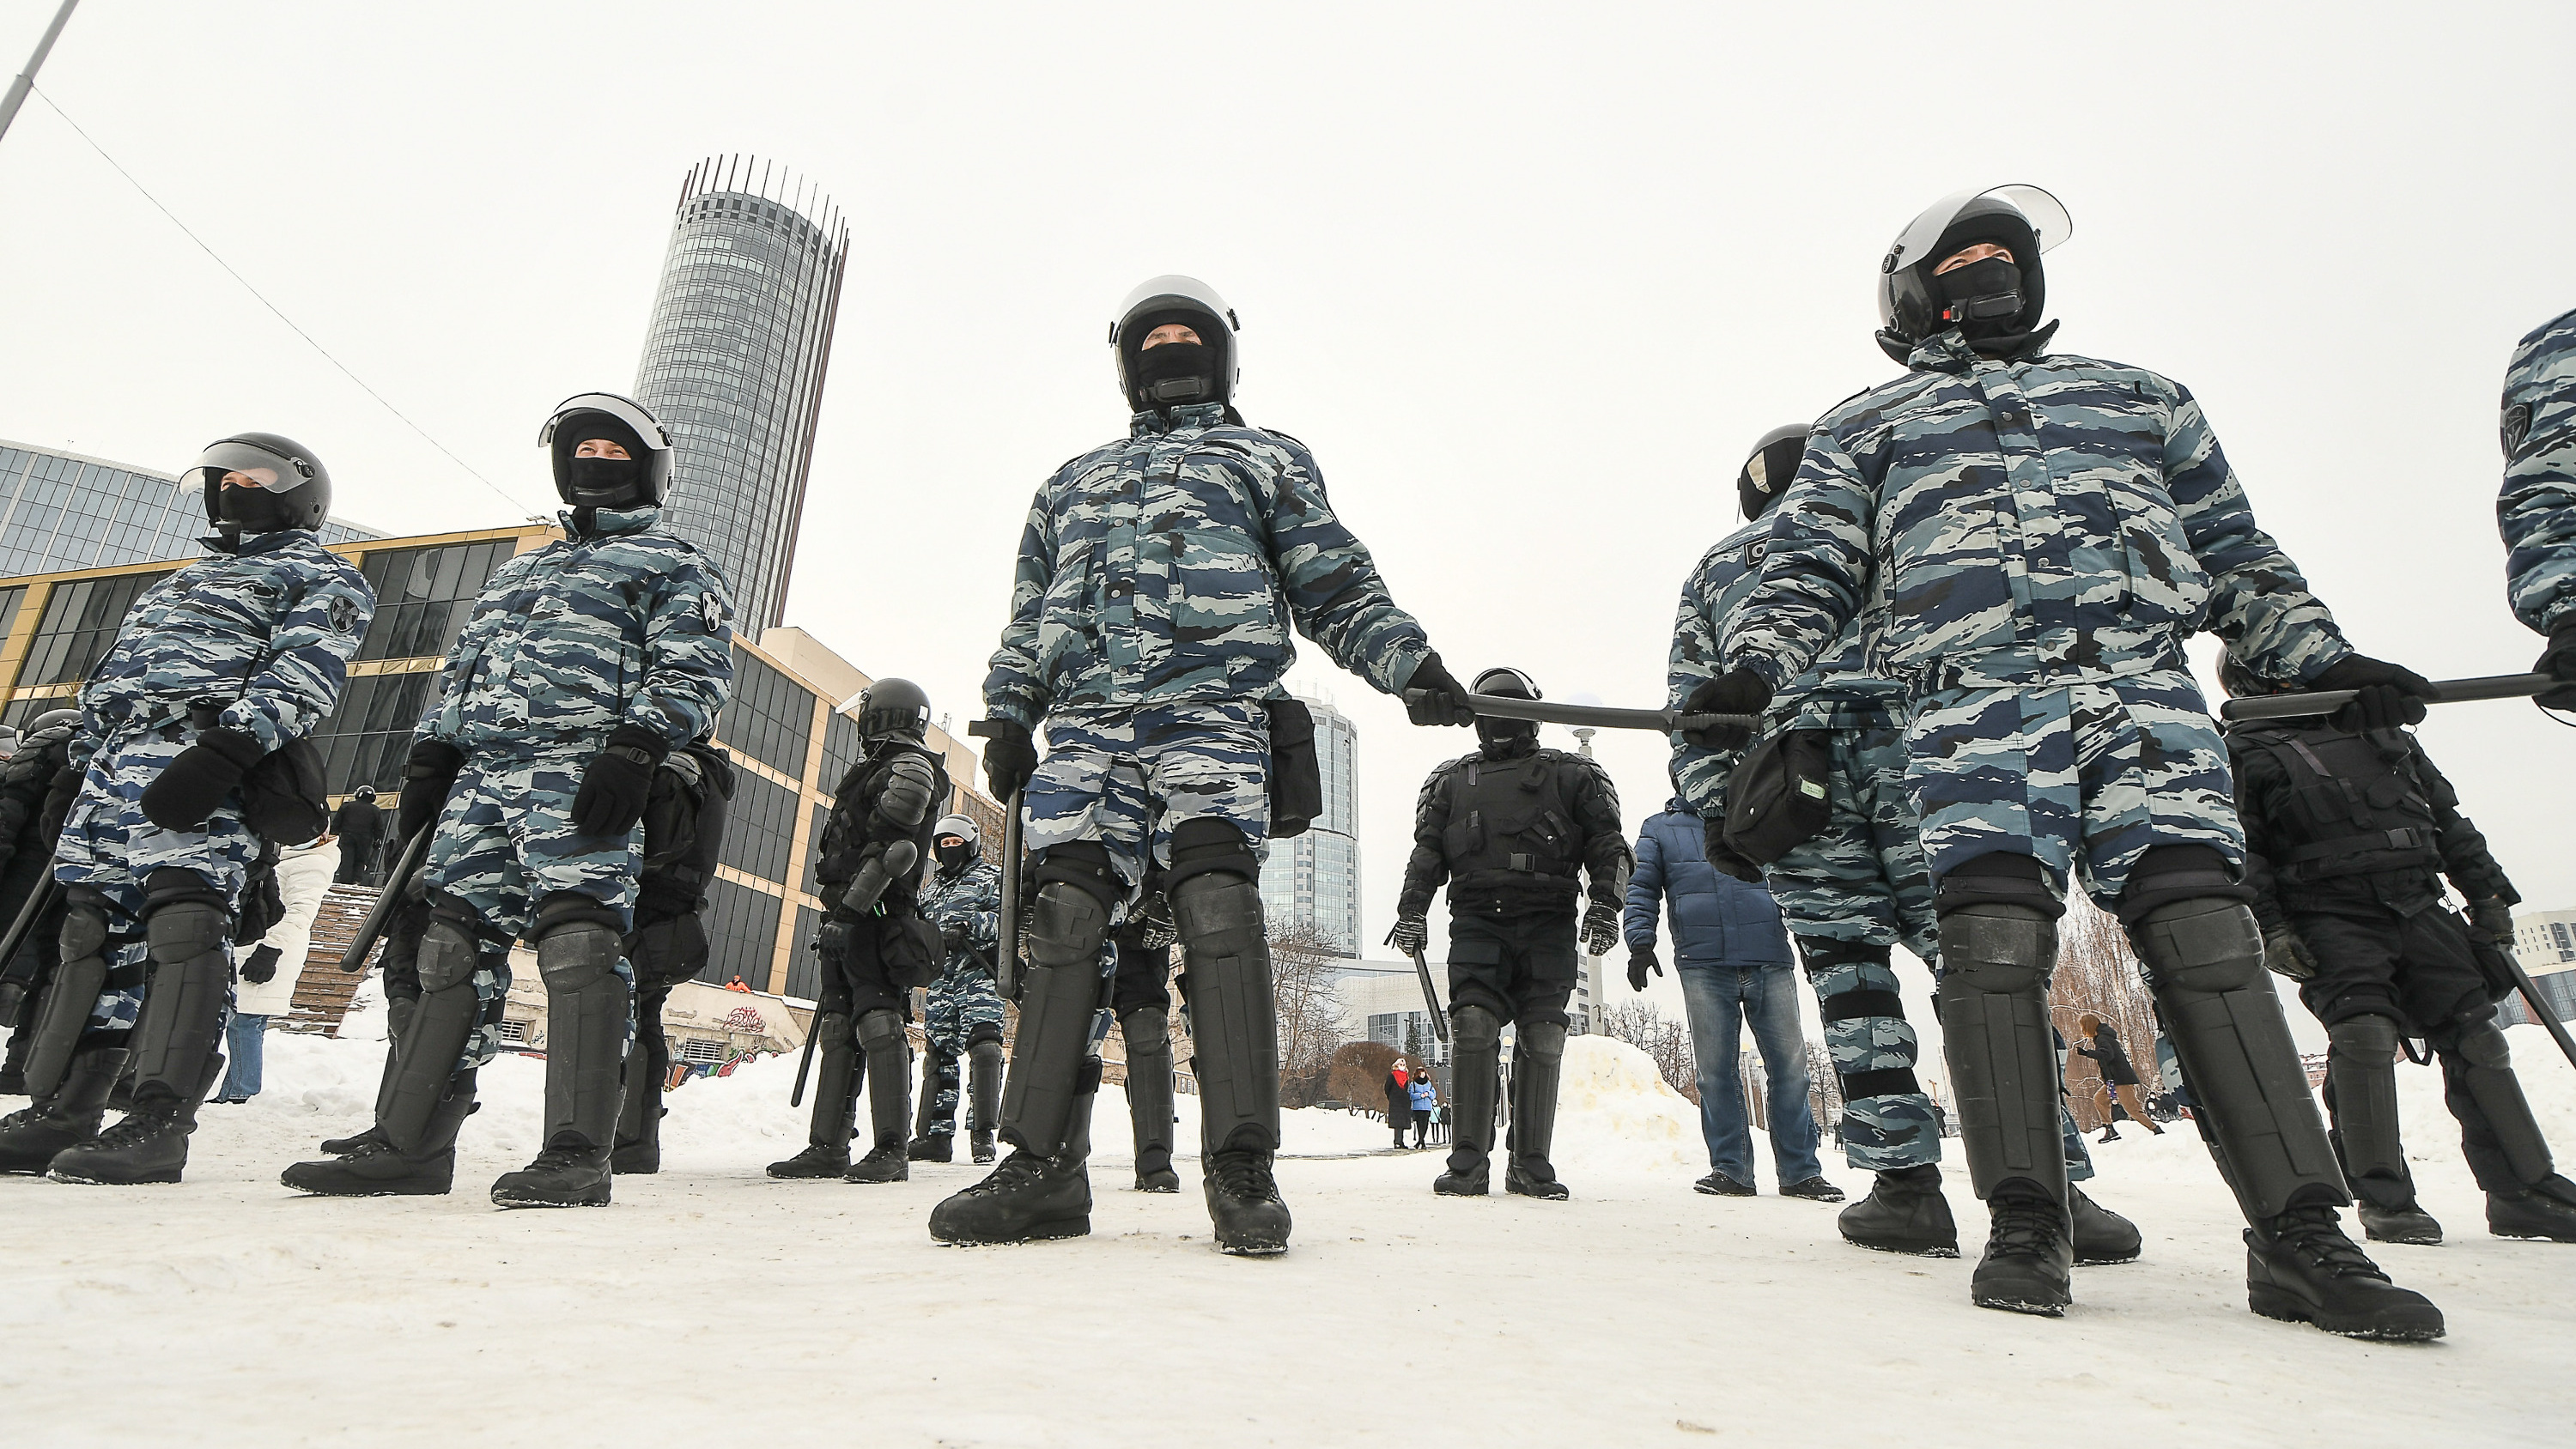 «В чем был смысл устраивать винтилово в конце?!» Журналист — о странностях акции протеста в Екатеринбурге